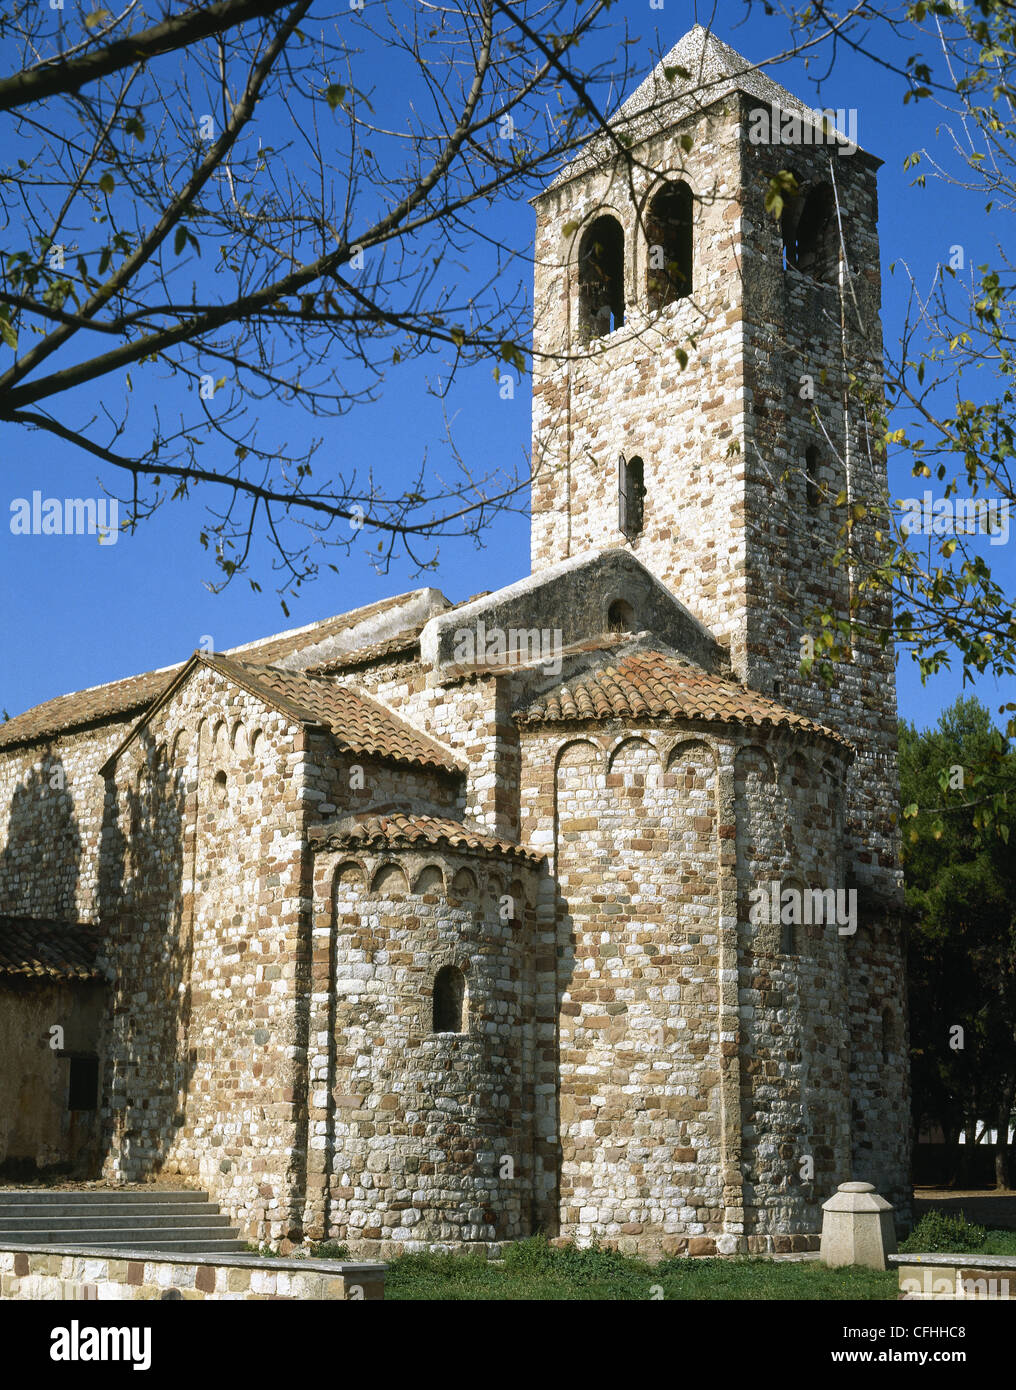 España. Barberá del Vallés. Iglesia de Santa María. El románico. Siglo 12. Exterior. Foto de stock